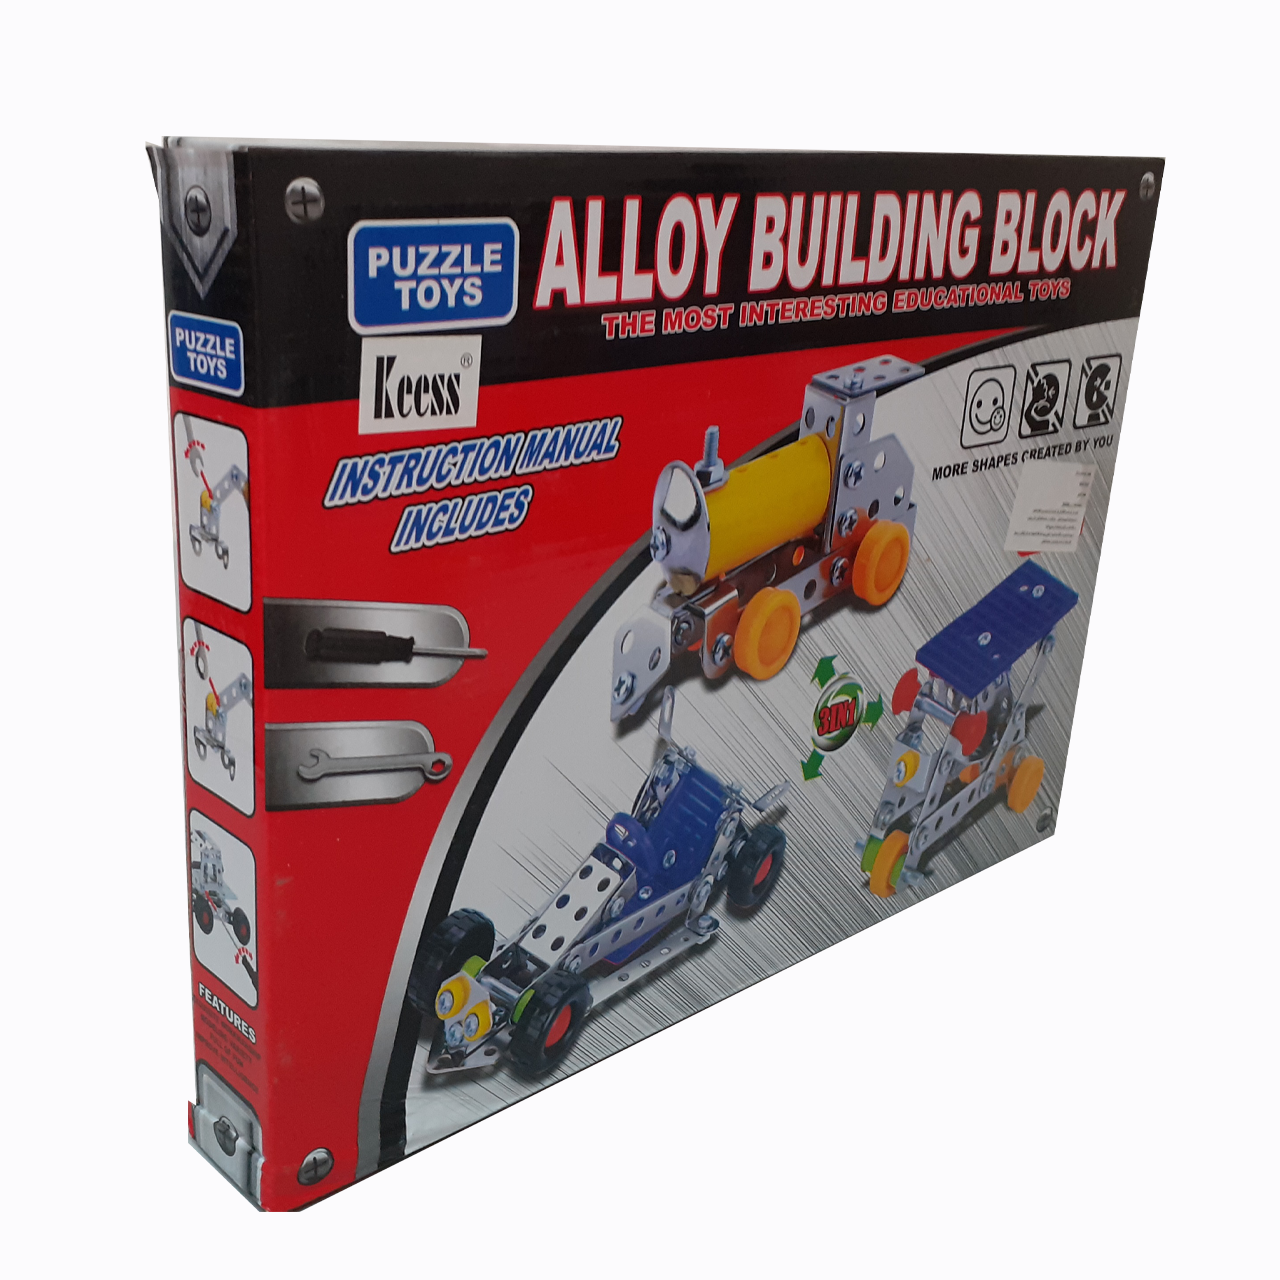 Building blocks - toys store - لعبة فك وتركيب - العاب ذكاء - العاب الذكاء -العاب ذكاء للاطفال